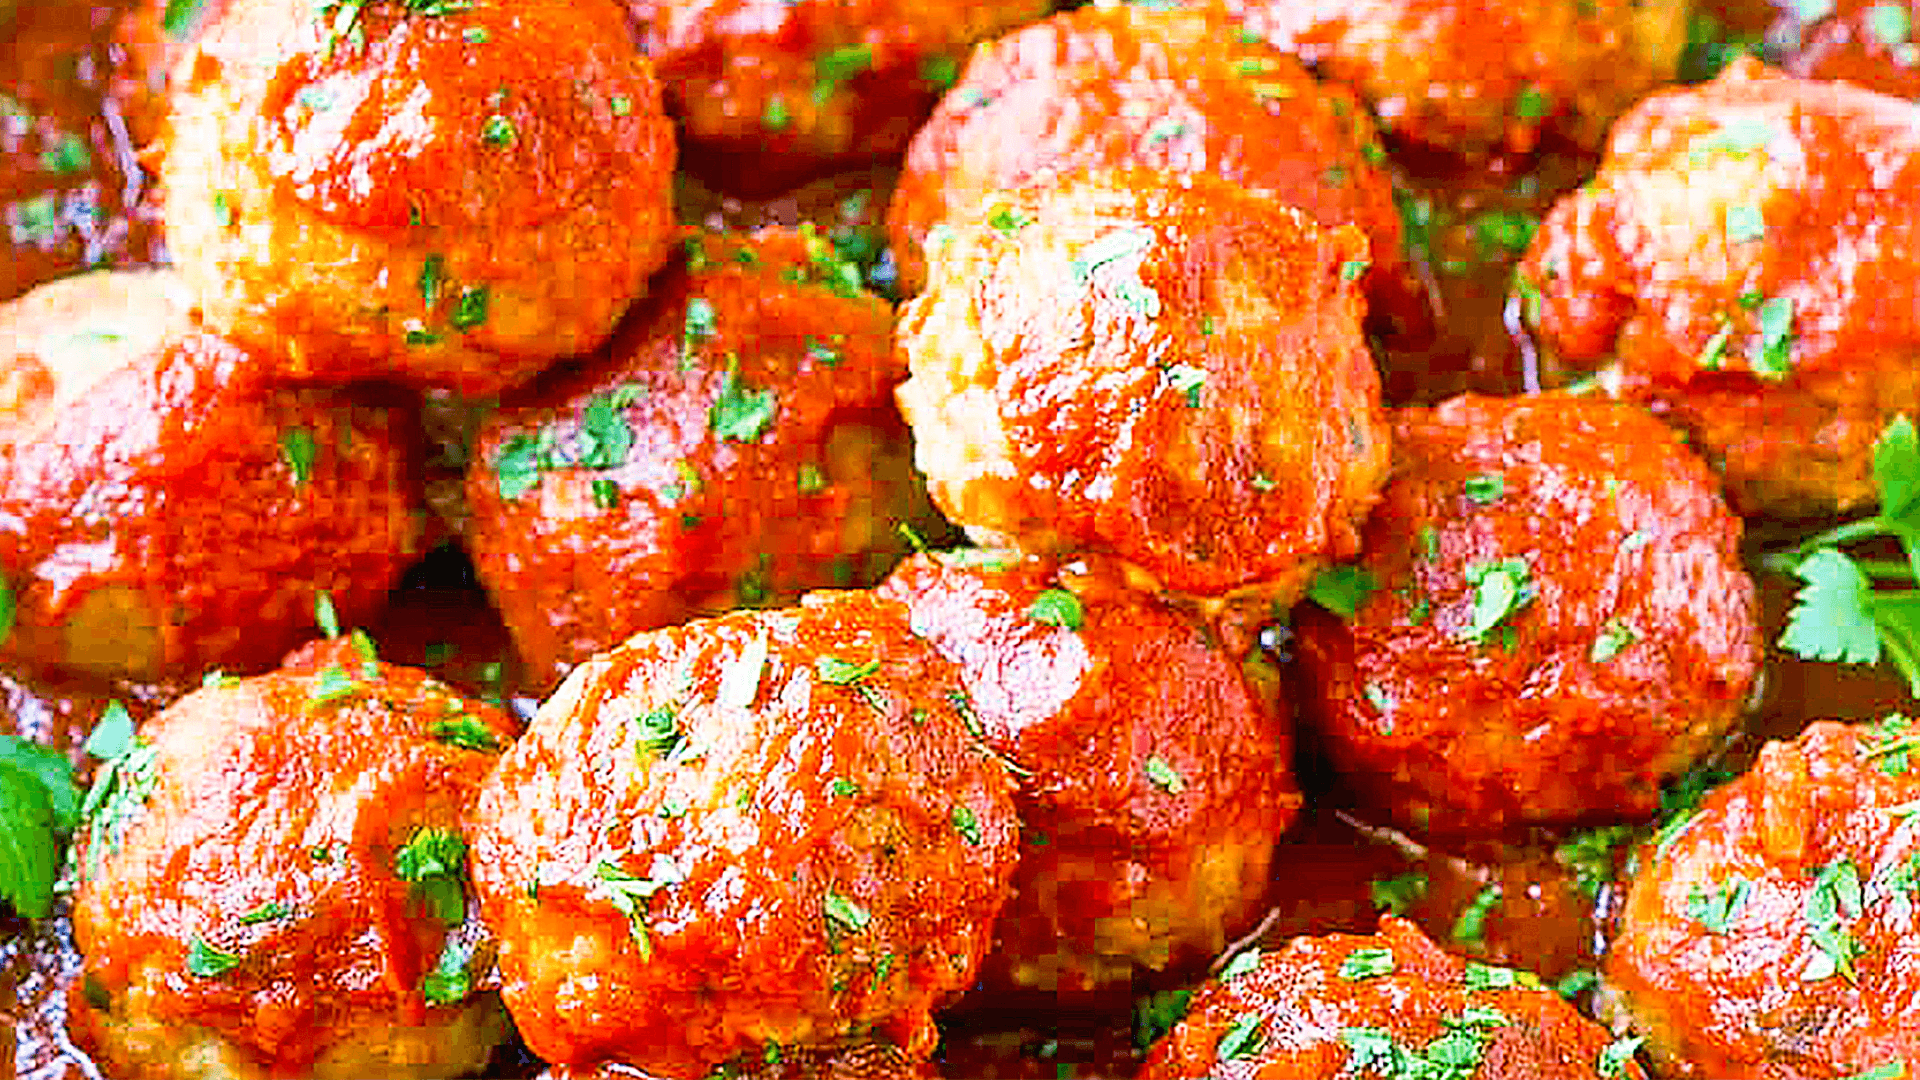 Italian Meatballs in Tomato Sauce